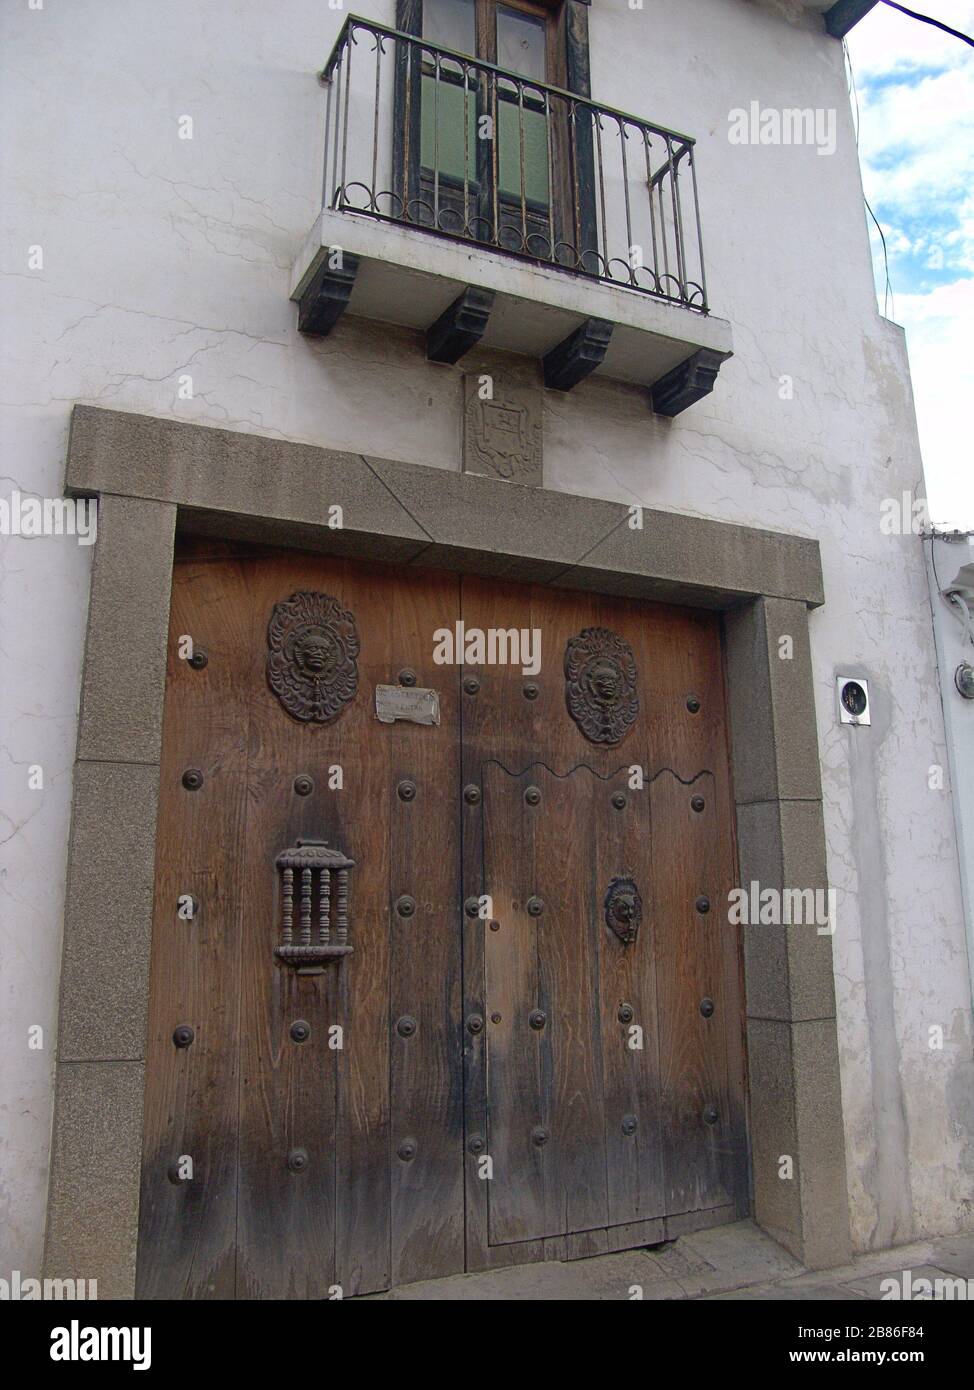 Knockerless puertas en Antigua Guatemala, el 21 de junio de 2005 16:46:49Z;  el propio trabajo; póngase en contacto con el creador en [1]Info: cámara  SONY DSC-F828, F-stop 4.0, la exposición 1/100, longitud